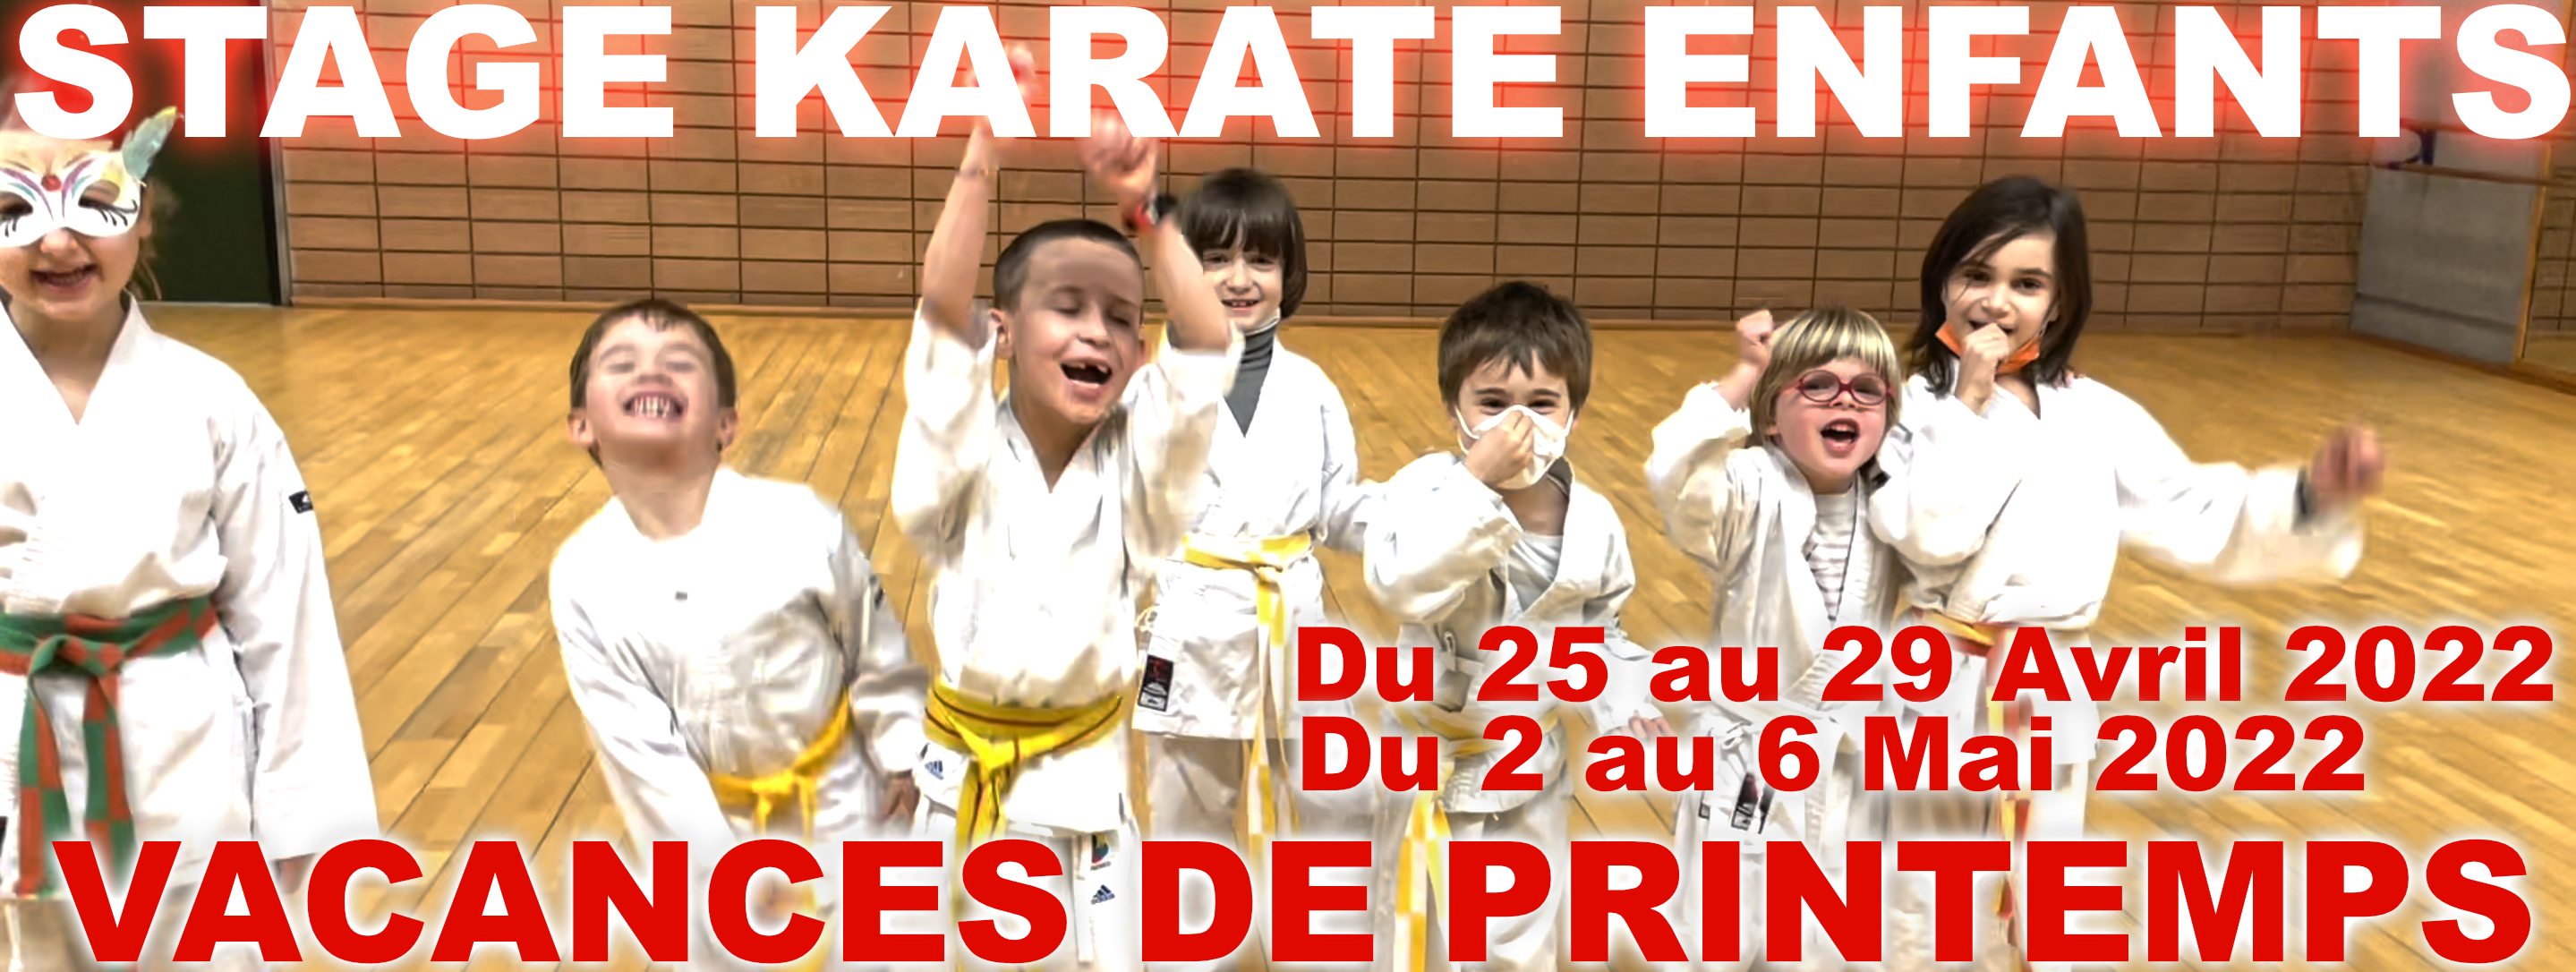 MAK stage karate enfants - Ã‰ric Delannoy